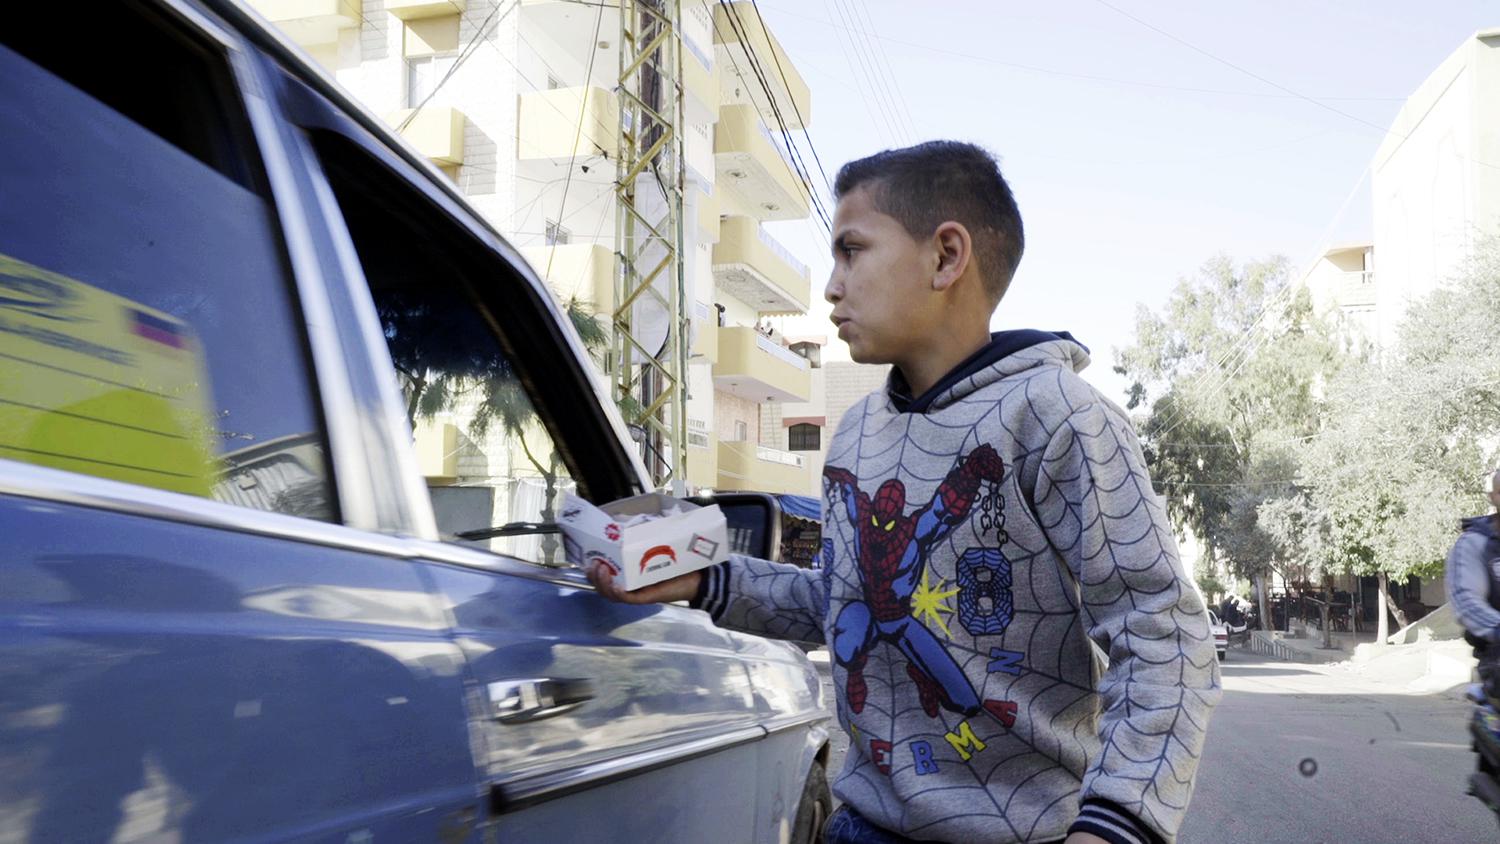 نزار (10 أعوام) لم يذهب إلى المدرسة في لبنان منذ وصوله من ضواحي دمشق عام 2011. يبيع العلكة في الشارع في جبل لبنان كل يوم لإعالة أسرته.